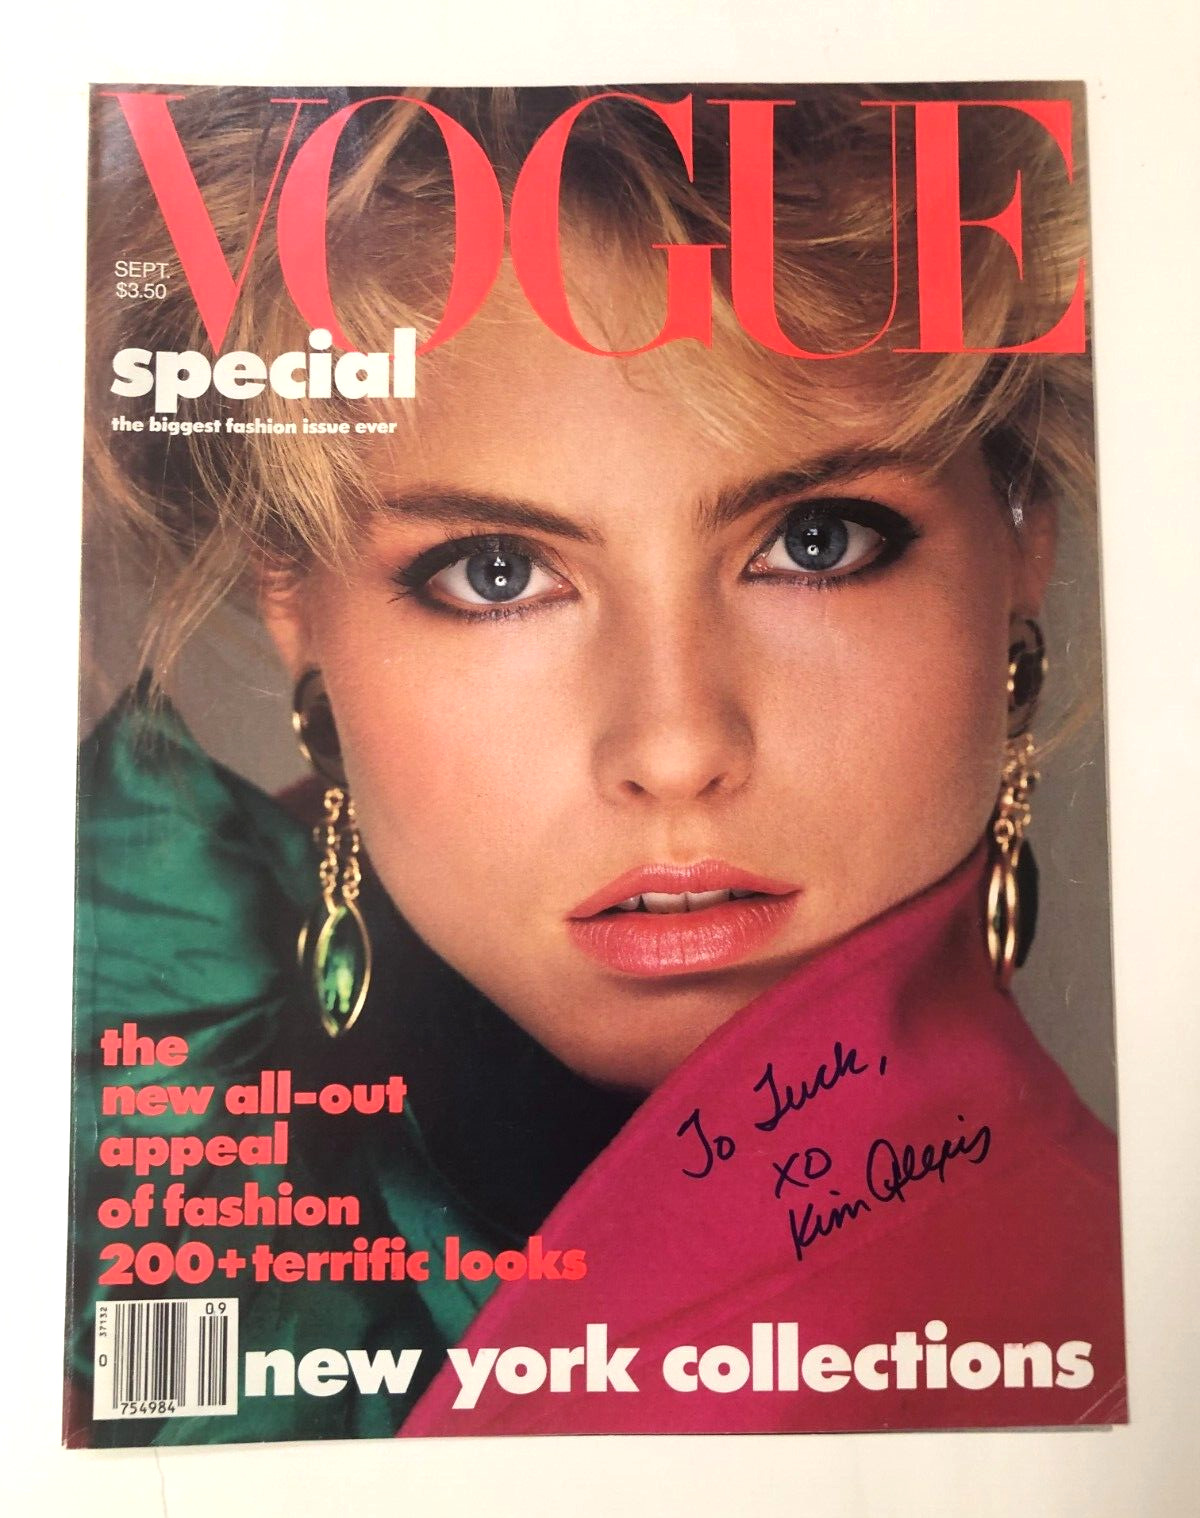 Kim Alexis Autographed 1984 VOGUE COVER Super Model & Actress